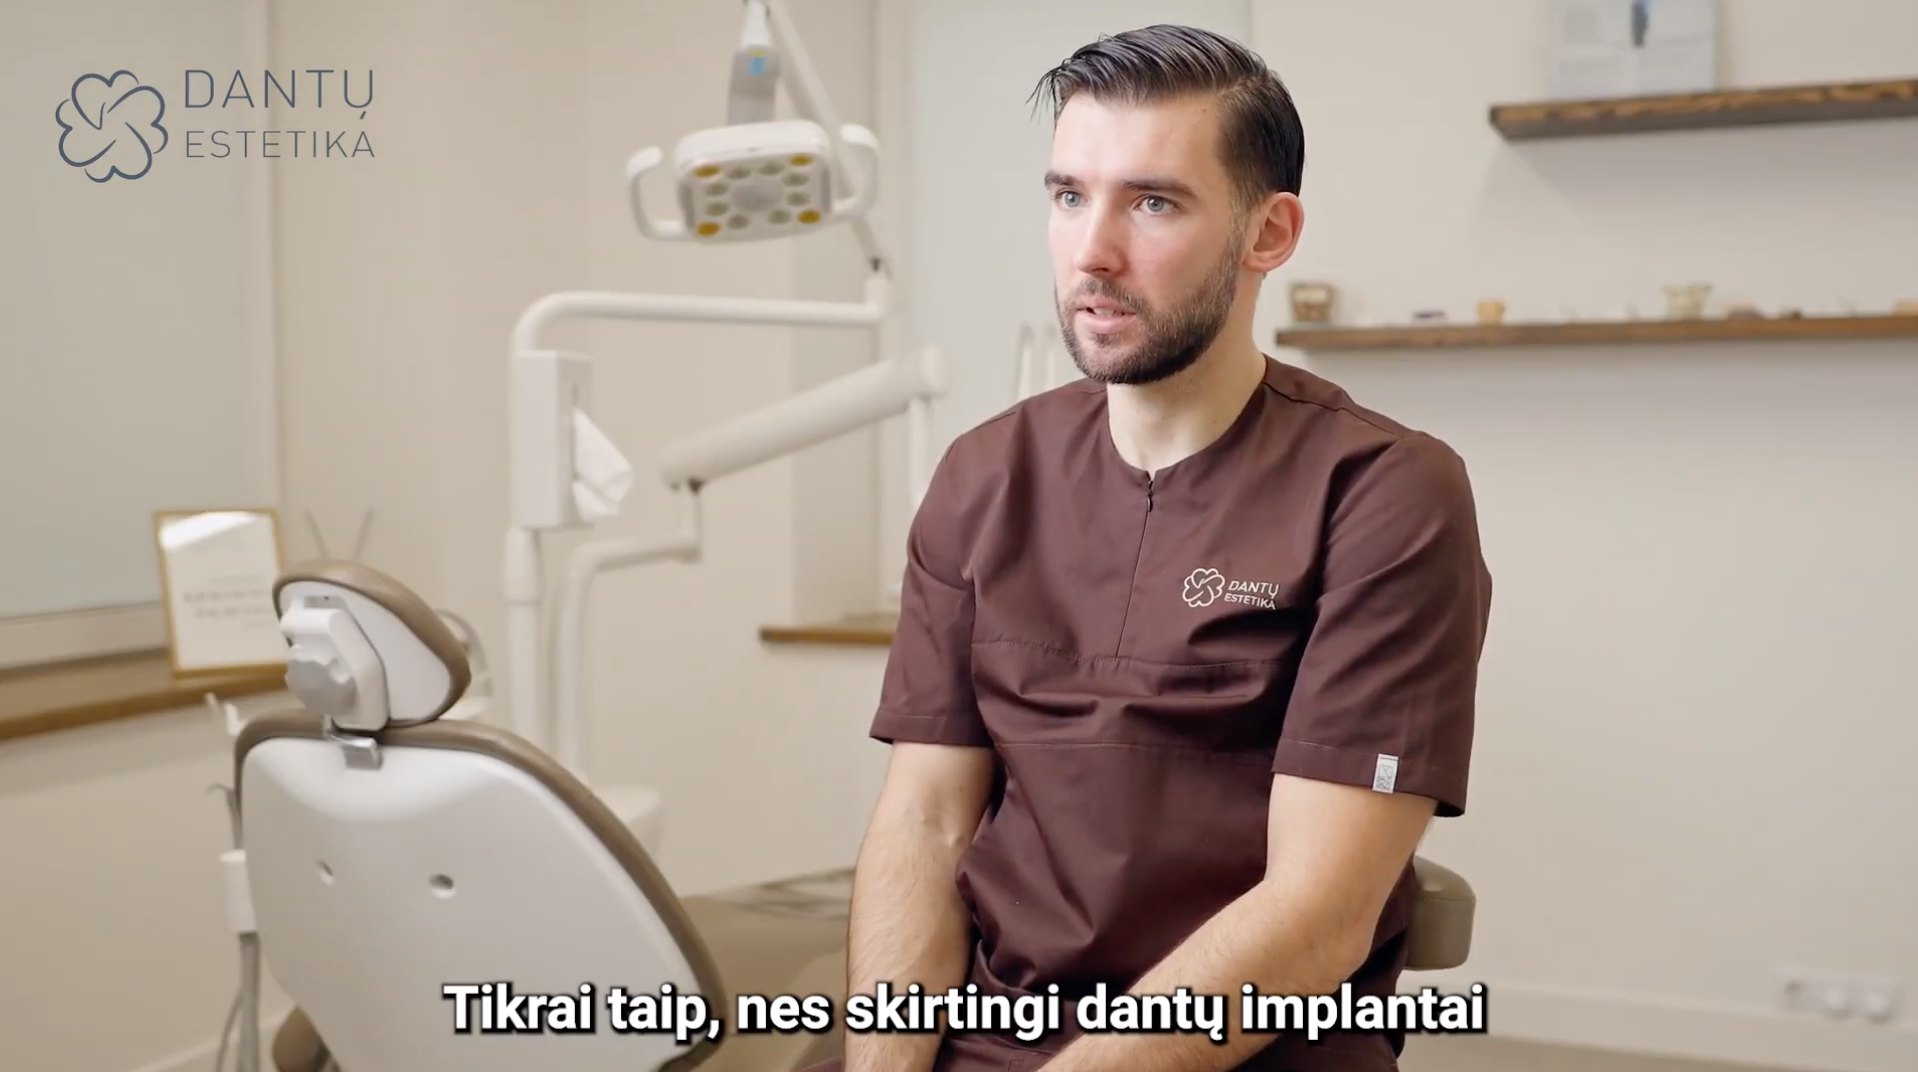 Dantų implantai Dantų estetikos klinikoje Kaune